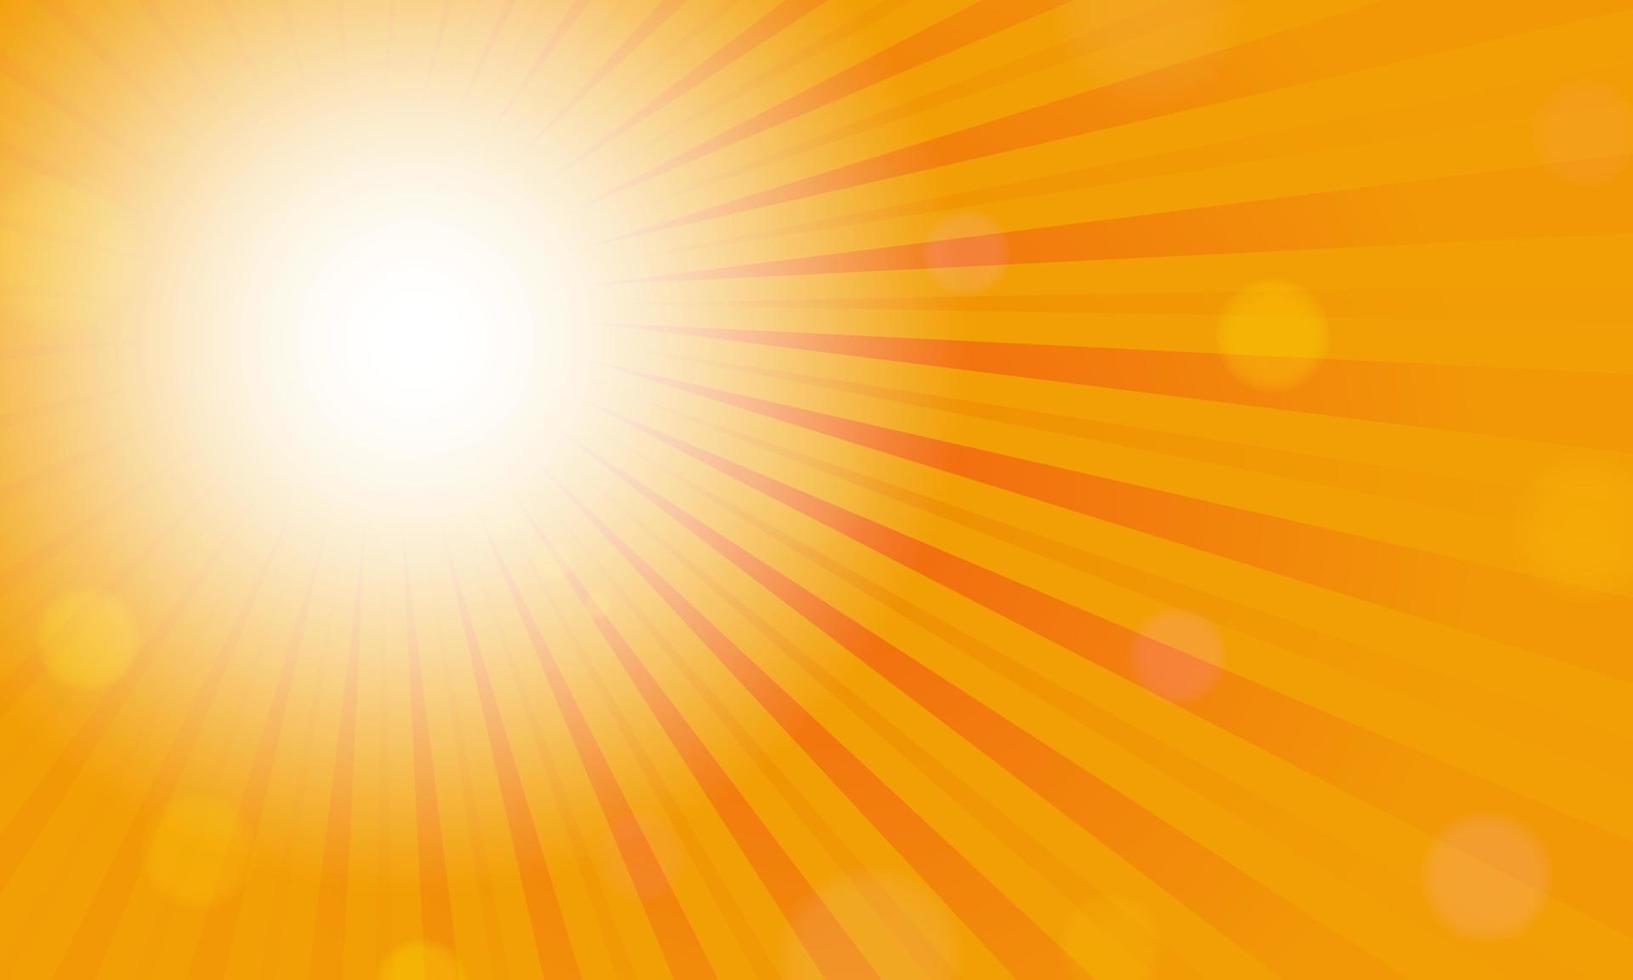 abstract zonnig stralen achtergrond. abstract zonnestraal ontwerp. wijnoogst stijgende lijn zon of zon straal, zon barsten retro. zonnig licht. oranje zon stralen. oranje zonnestraal. zonnestraal achtergrond - eps 10 vector